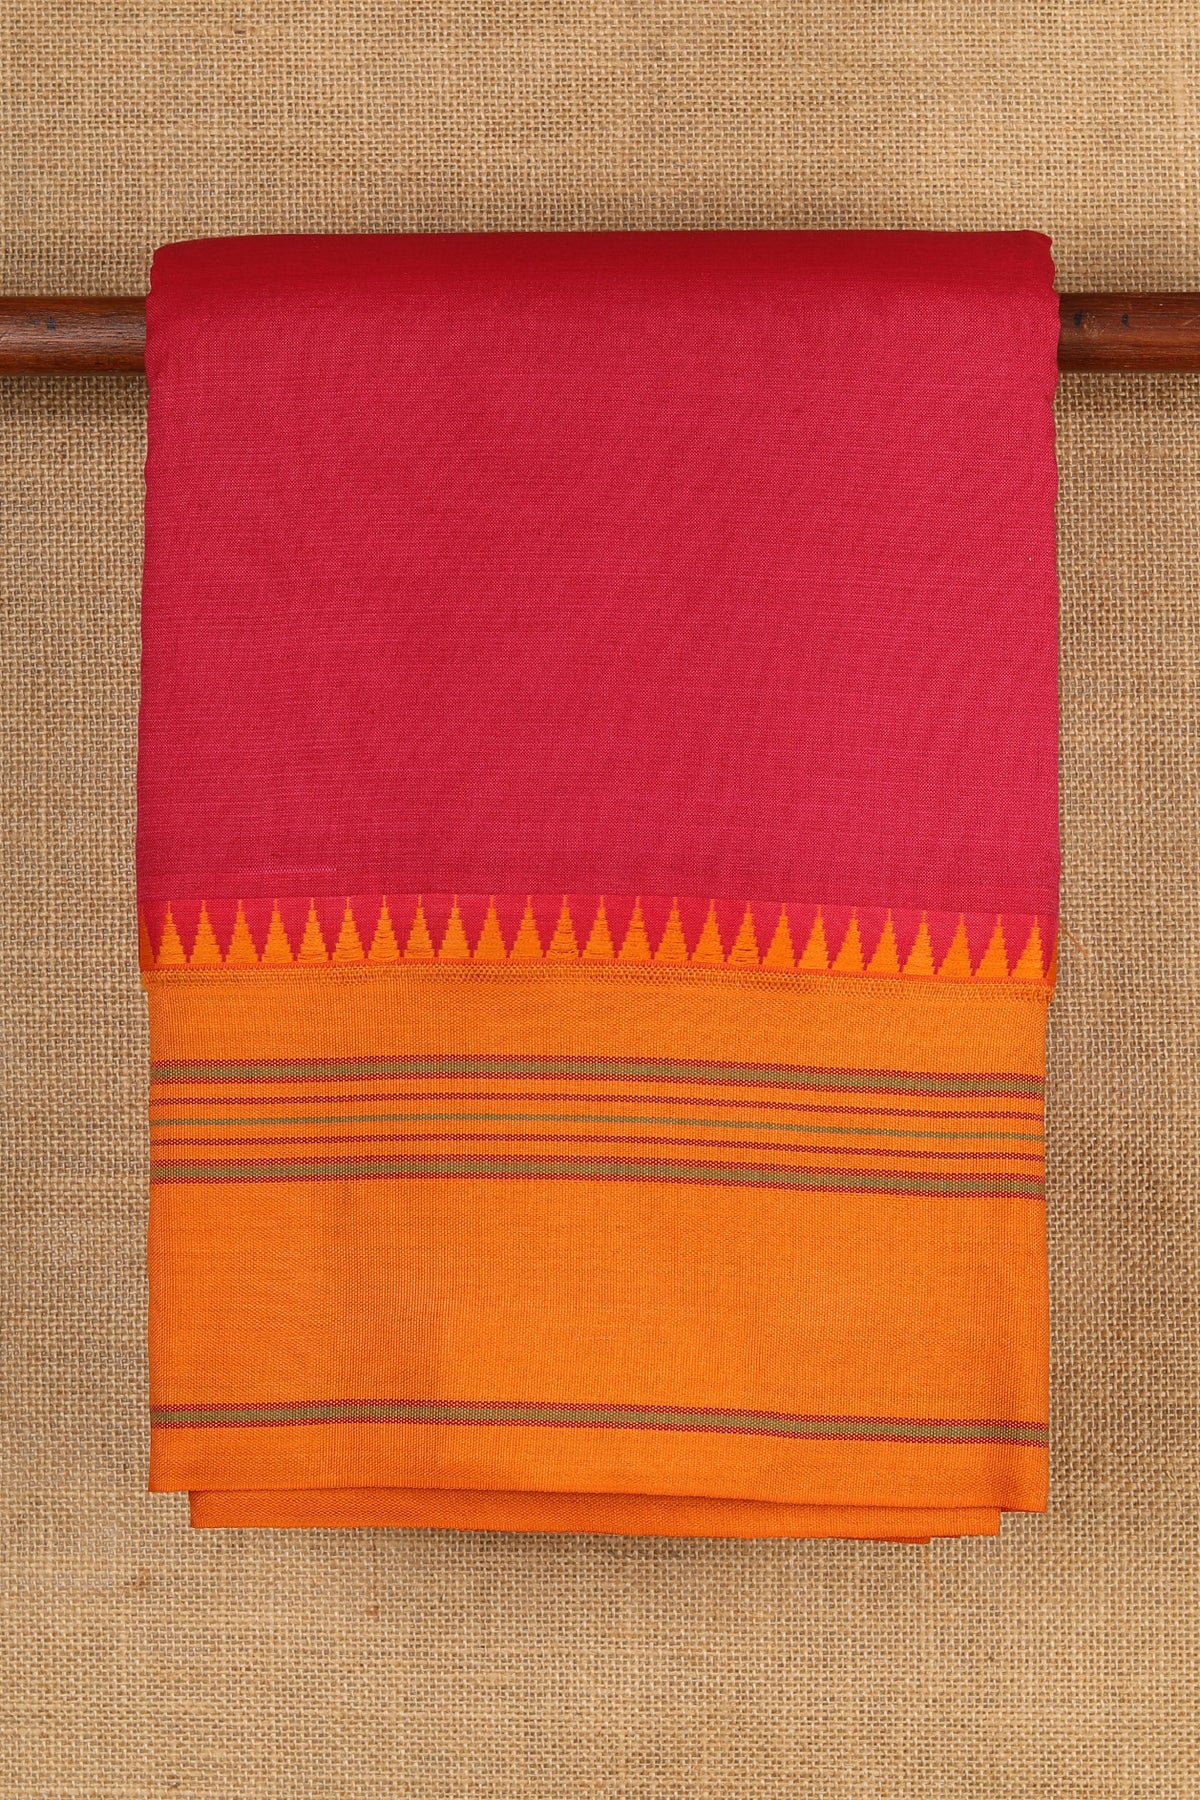 Thread Work Big Border In Plain Magenta Pink Dharwad Cotton Saree